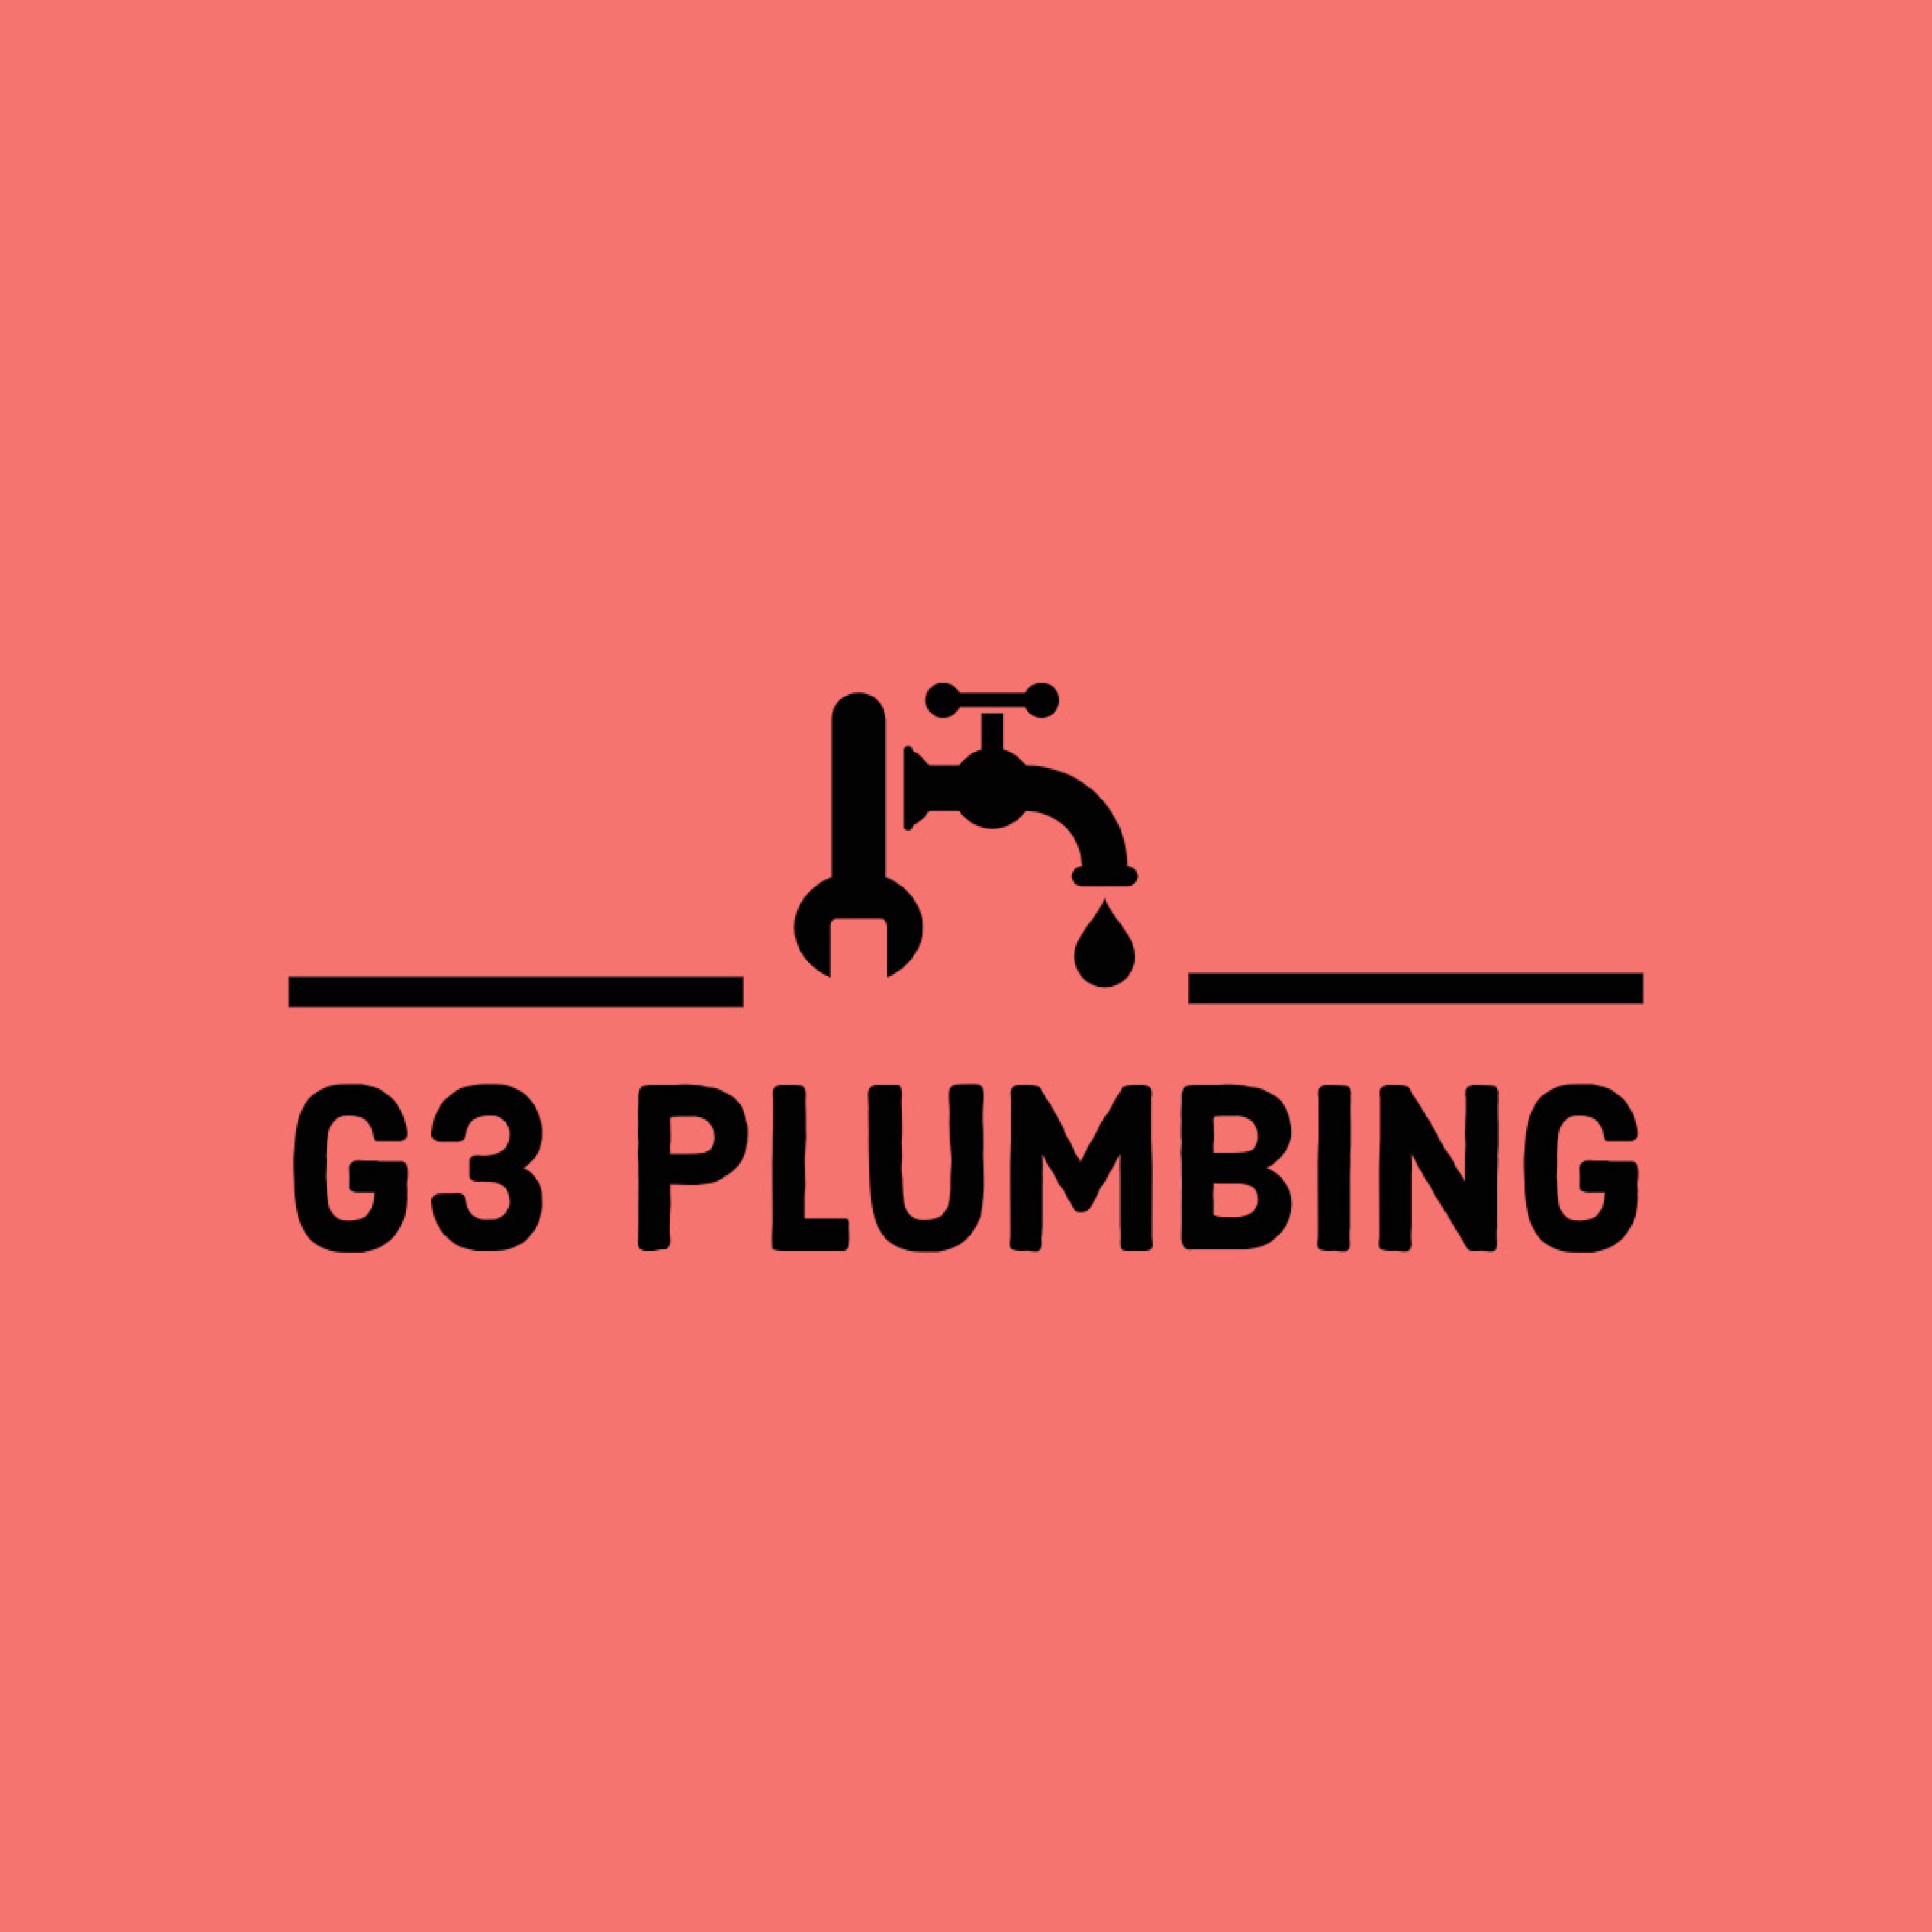 G3 Plumbing - Unlicensed Contractor Logo